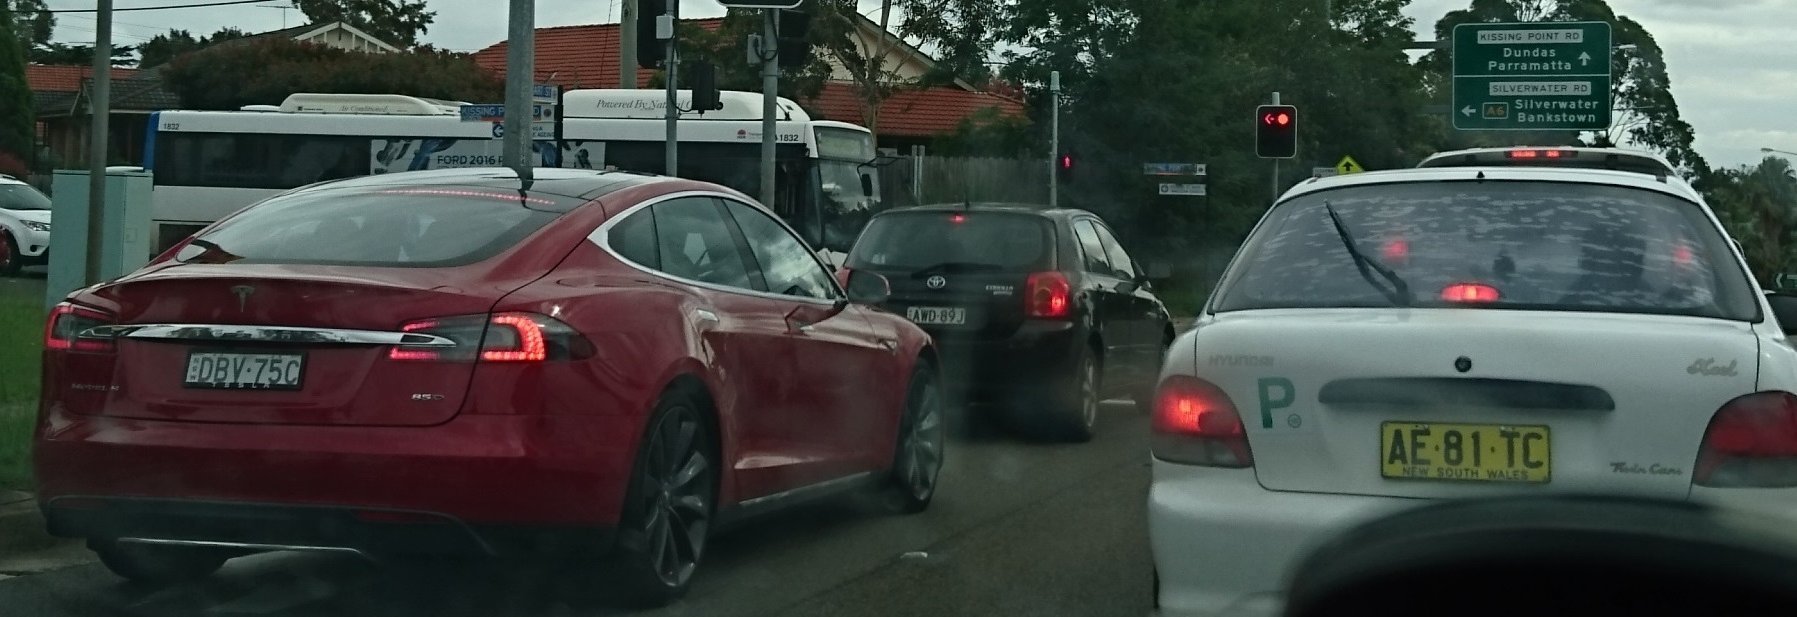 Tesla Sydney 04a.jpg